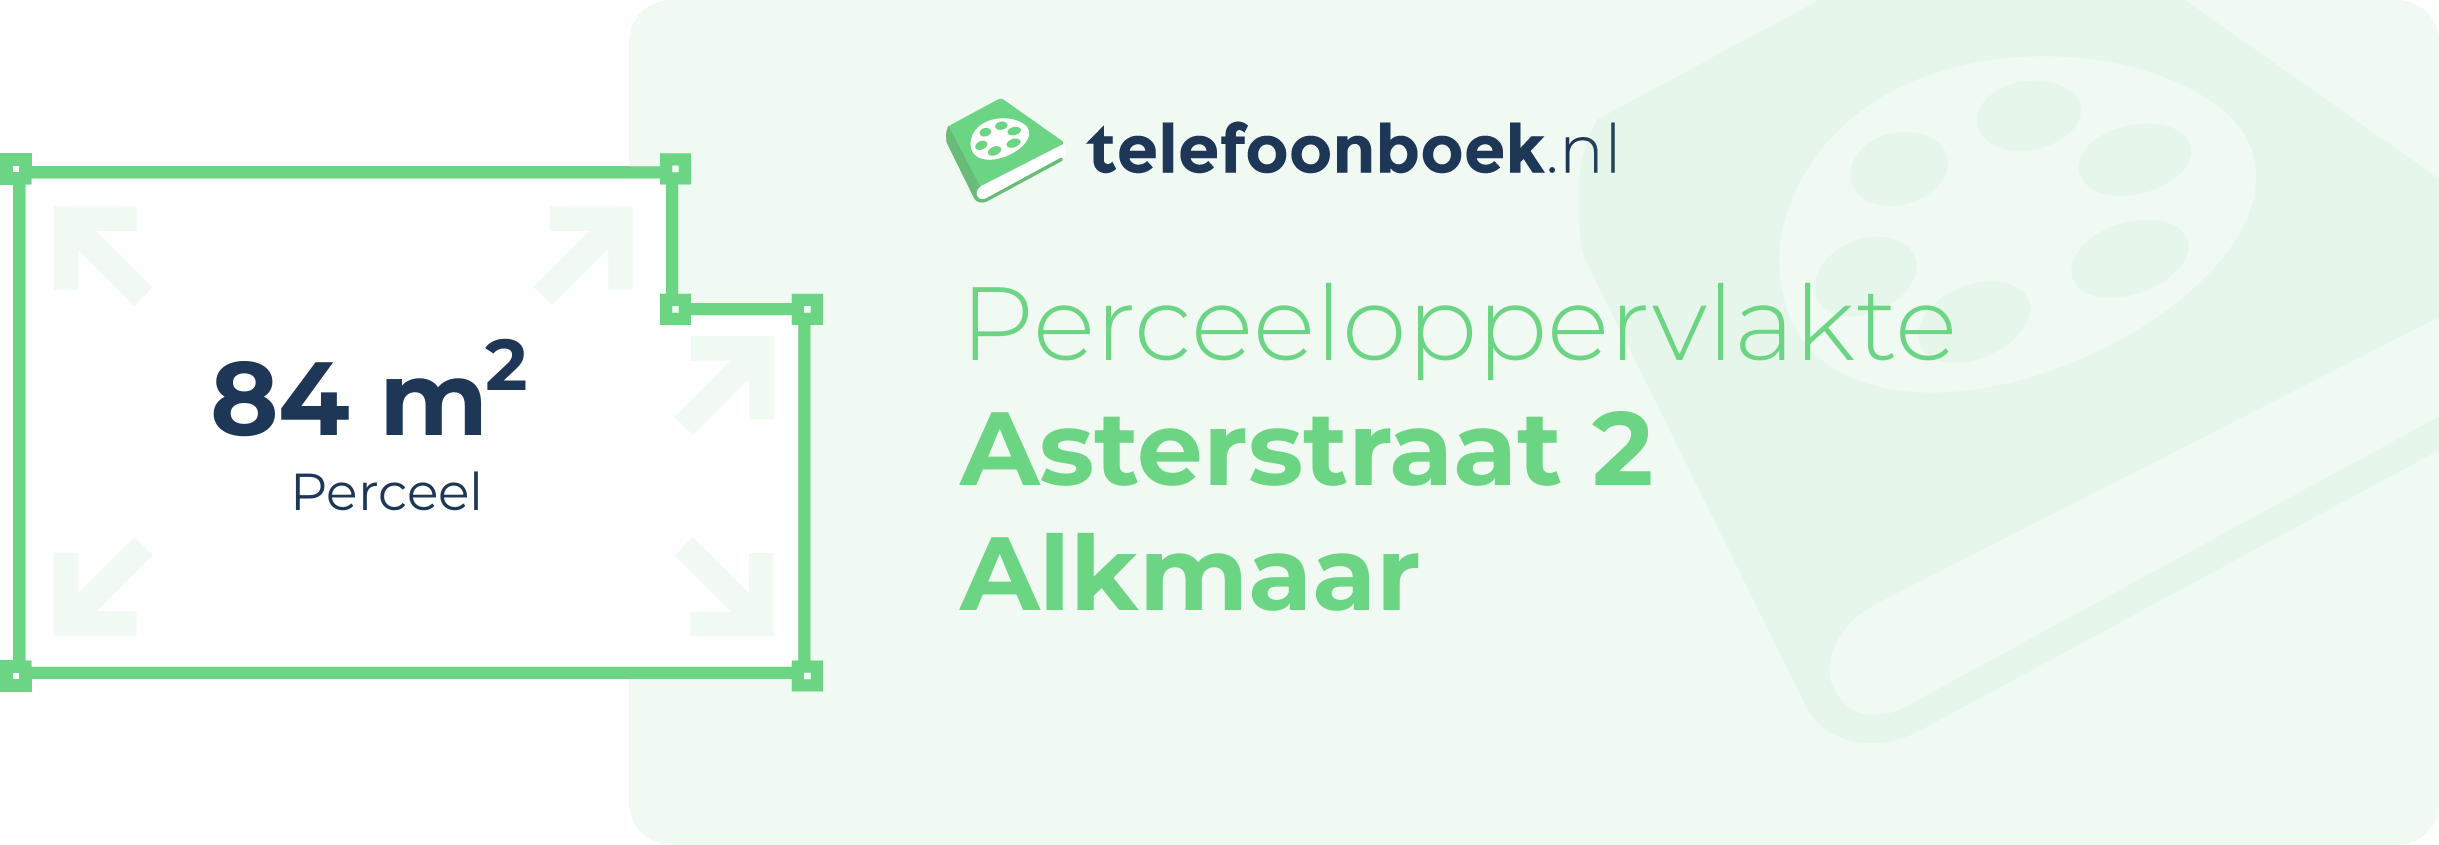 Perceeloppervlakte Asterstraat 2 Alkmaar